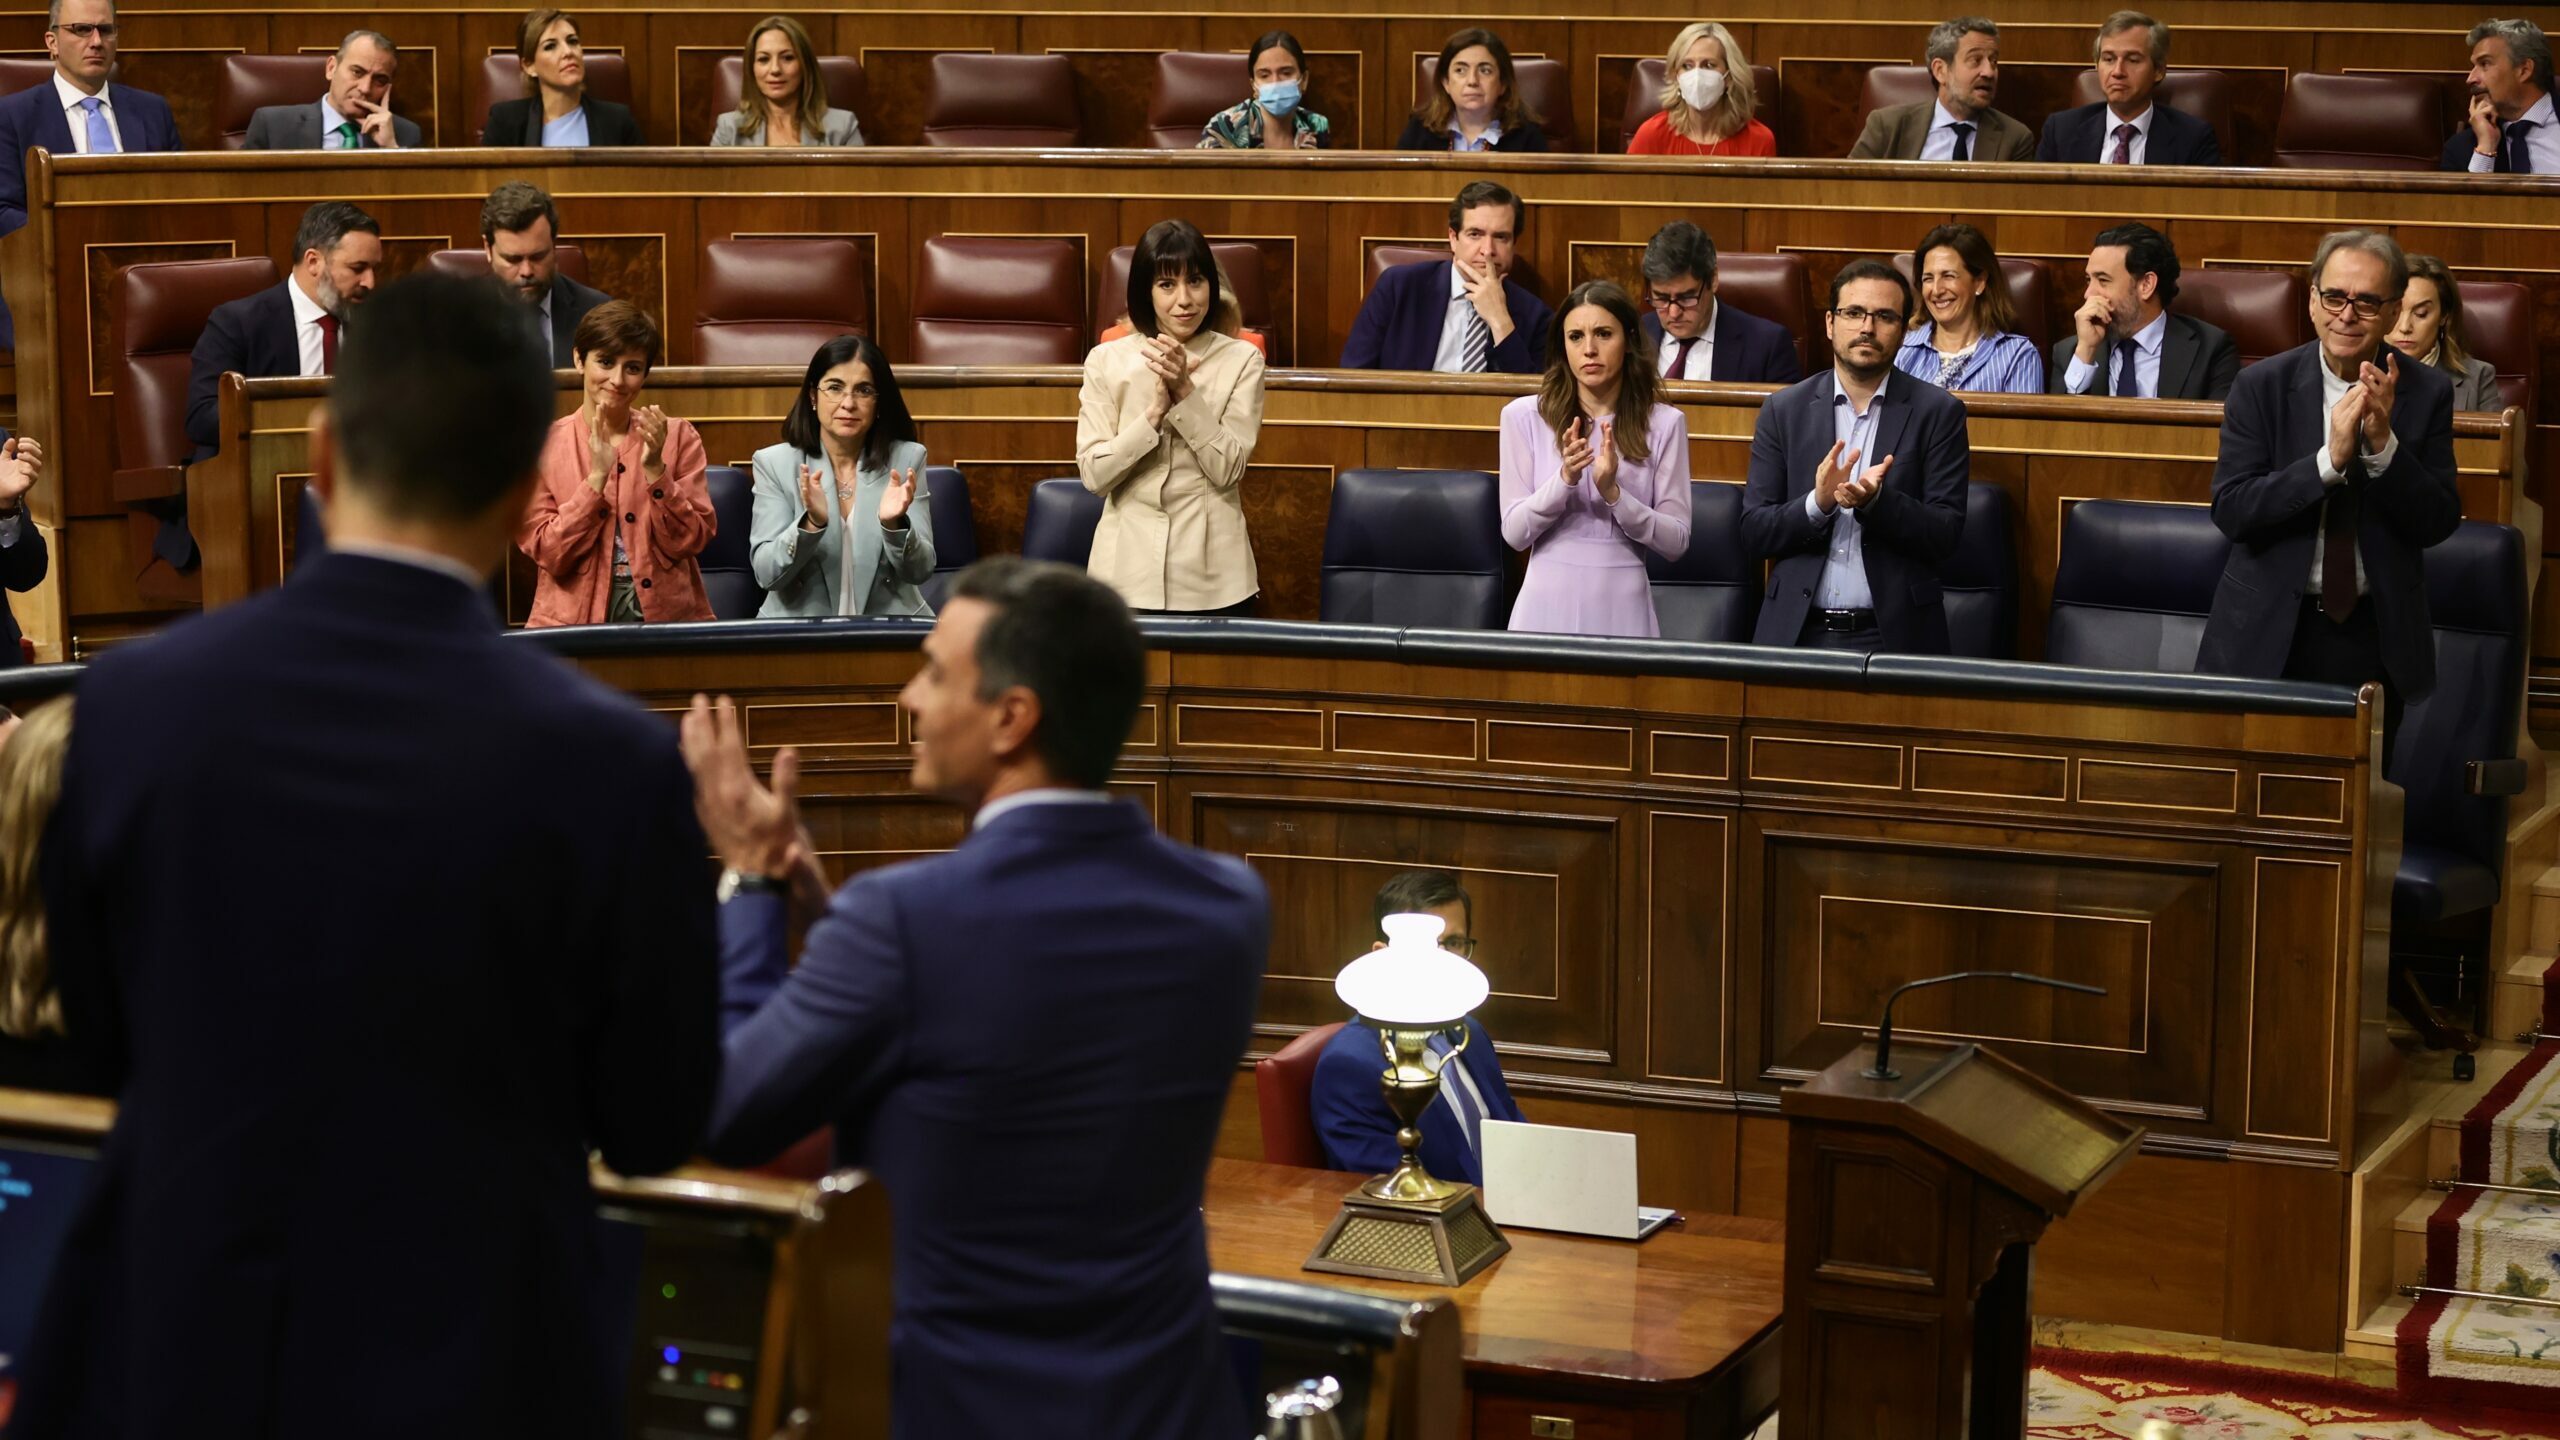 La Ley Audiovisual divide al Gobierno: los socialistas votan a favor y Podemos se abstiene